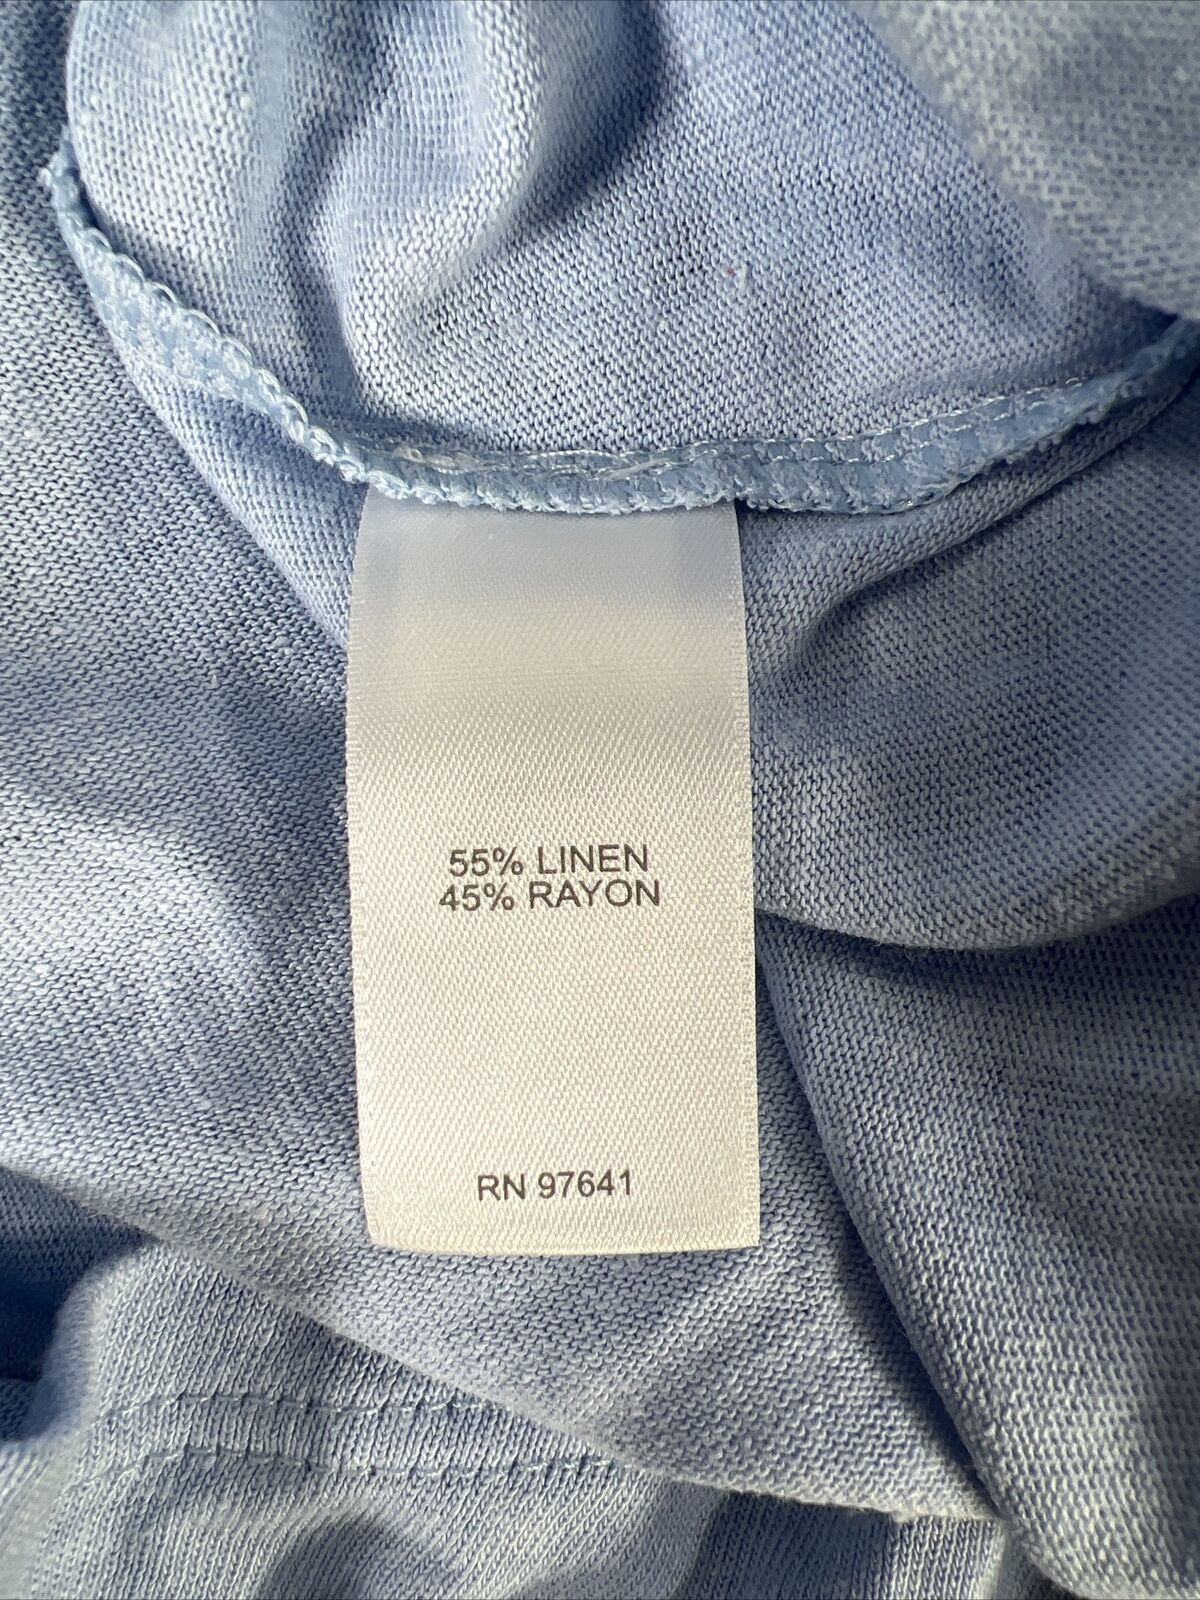 NEW J. Jill Women's Blue Love Linen Open Sleeve Shirt Top - Plus 1X